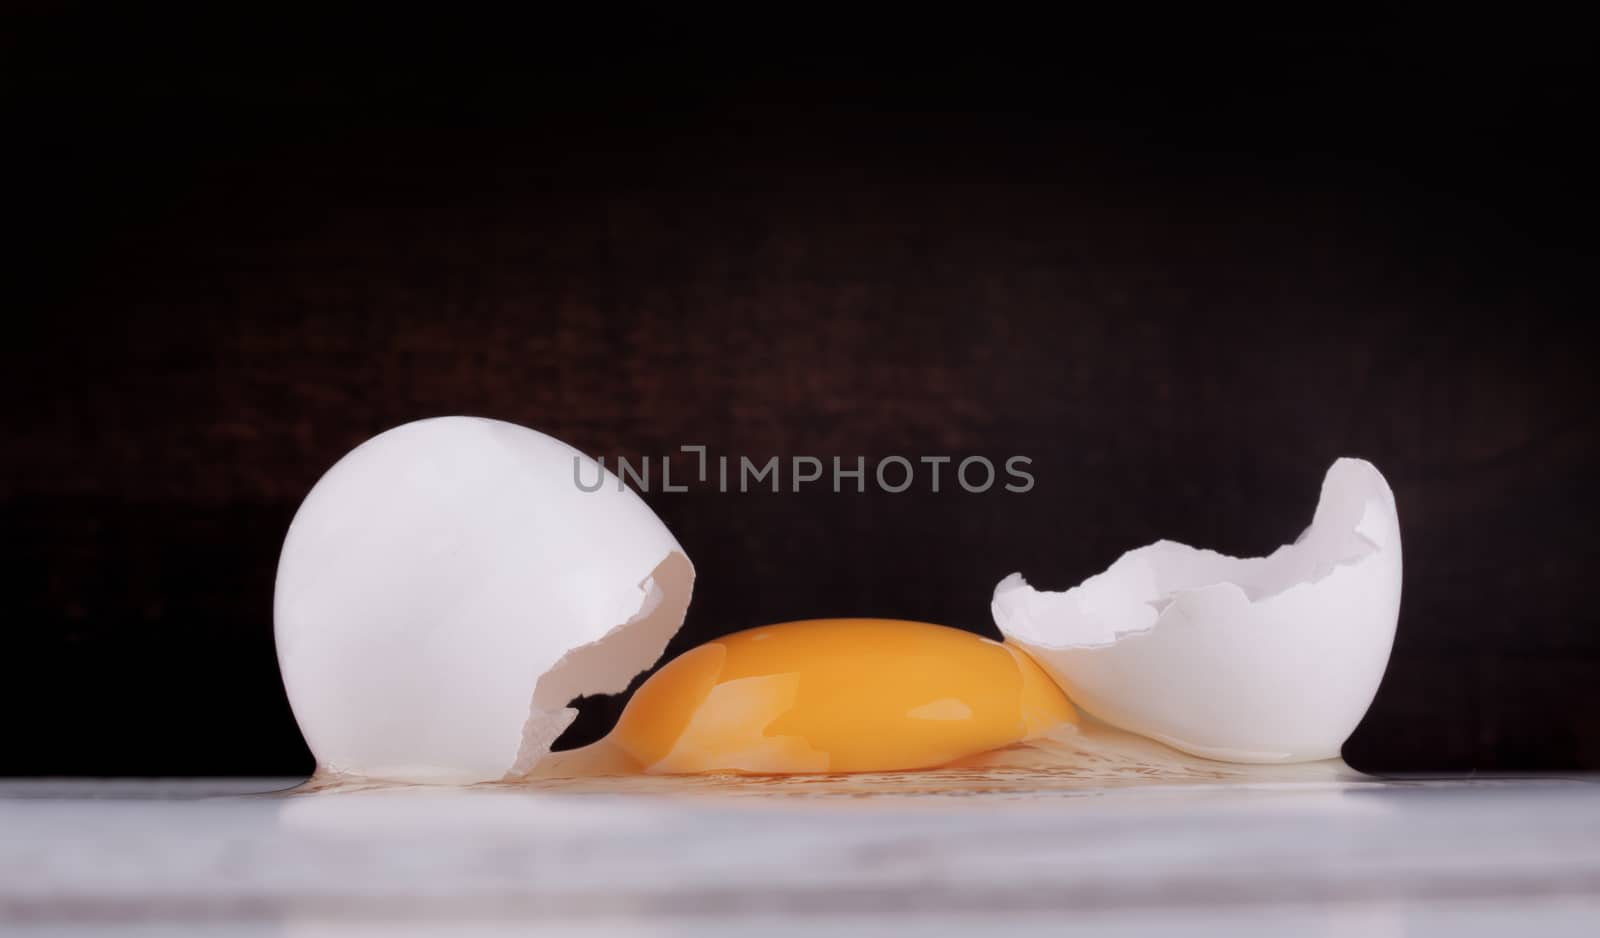 Fresh raw white eggs as ingredient